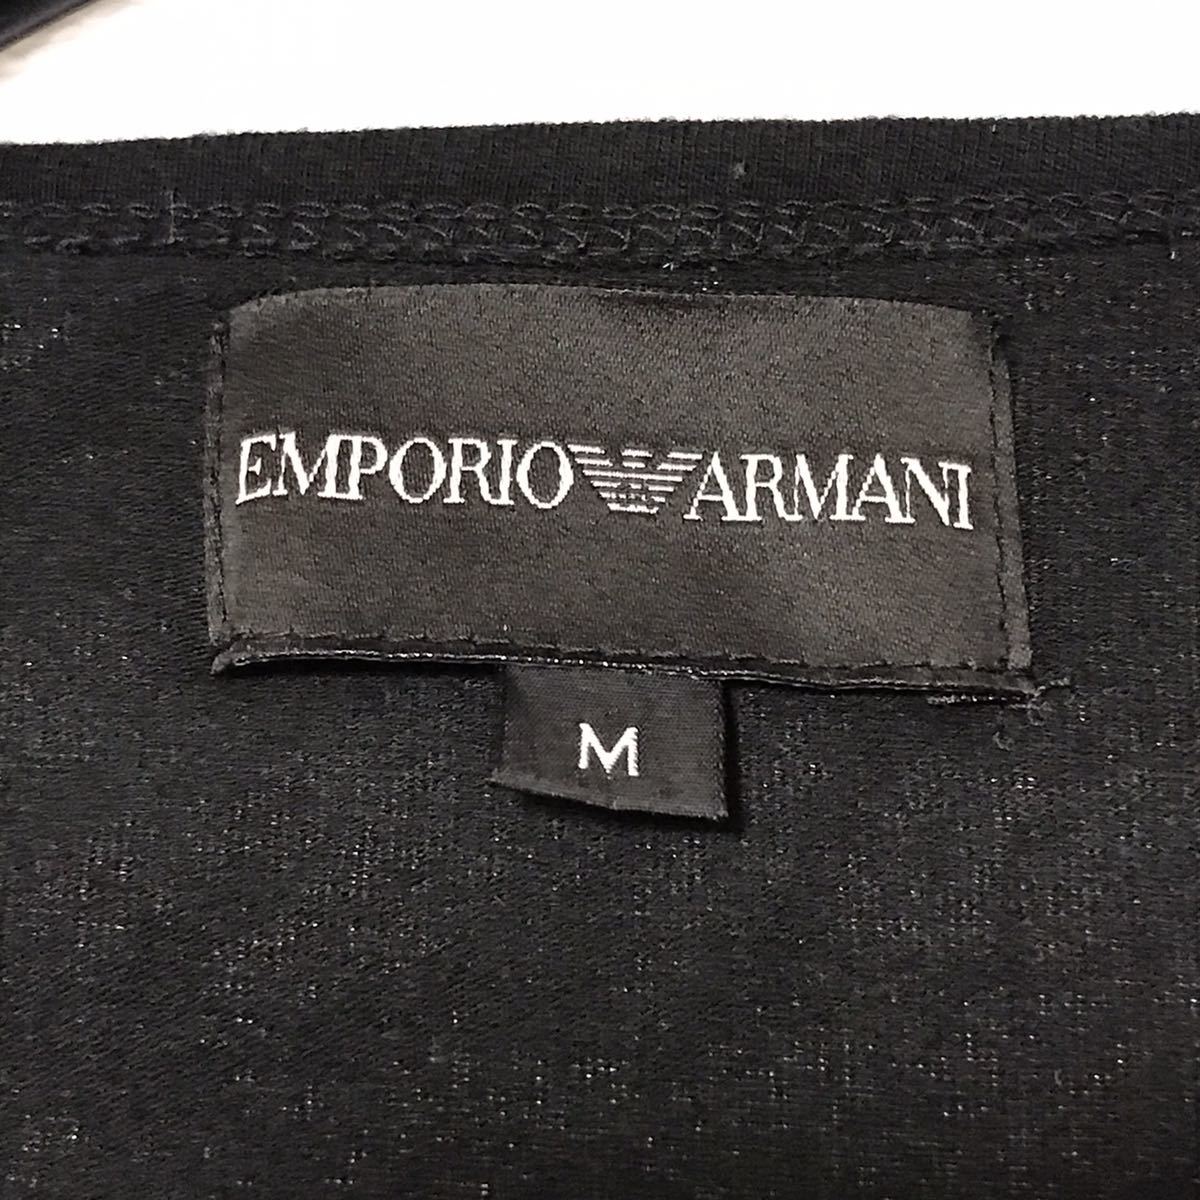 EMPORIO ARMANI エンポリオアルマーニ 長袖Tシャツ ロンT トップス カットソー ブラック メンズ 背面ロゴ 袖ロゴ M_画像7